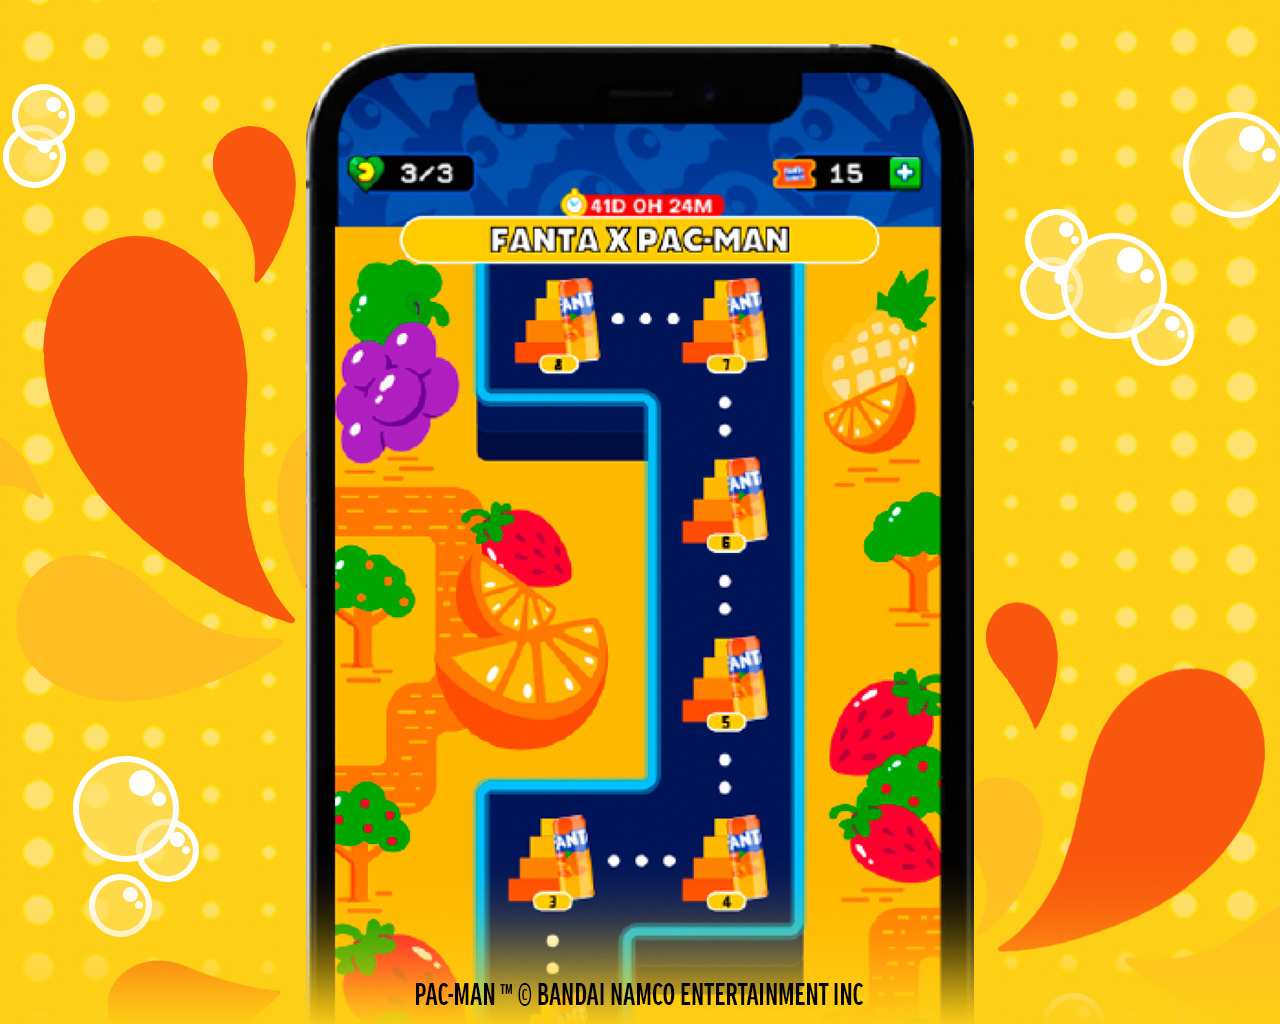 Interfaz del juego para celulares Android y IPhone de Tropical Pac-Man que muestra un nivel del laberinto con frutas y los fantasmas de colores.